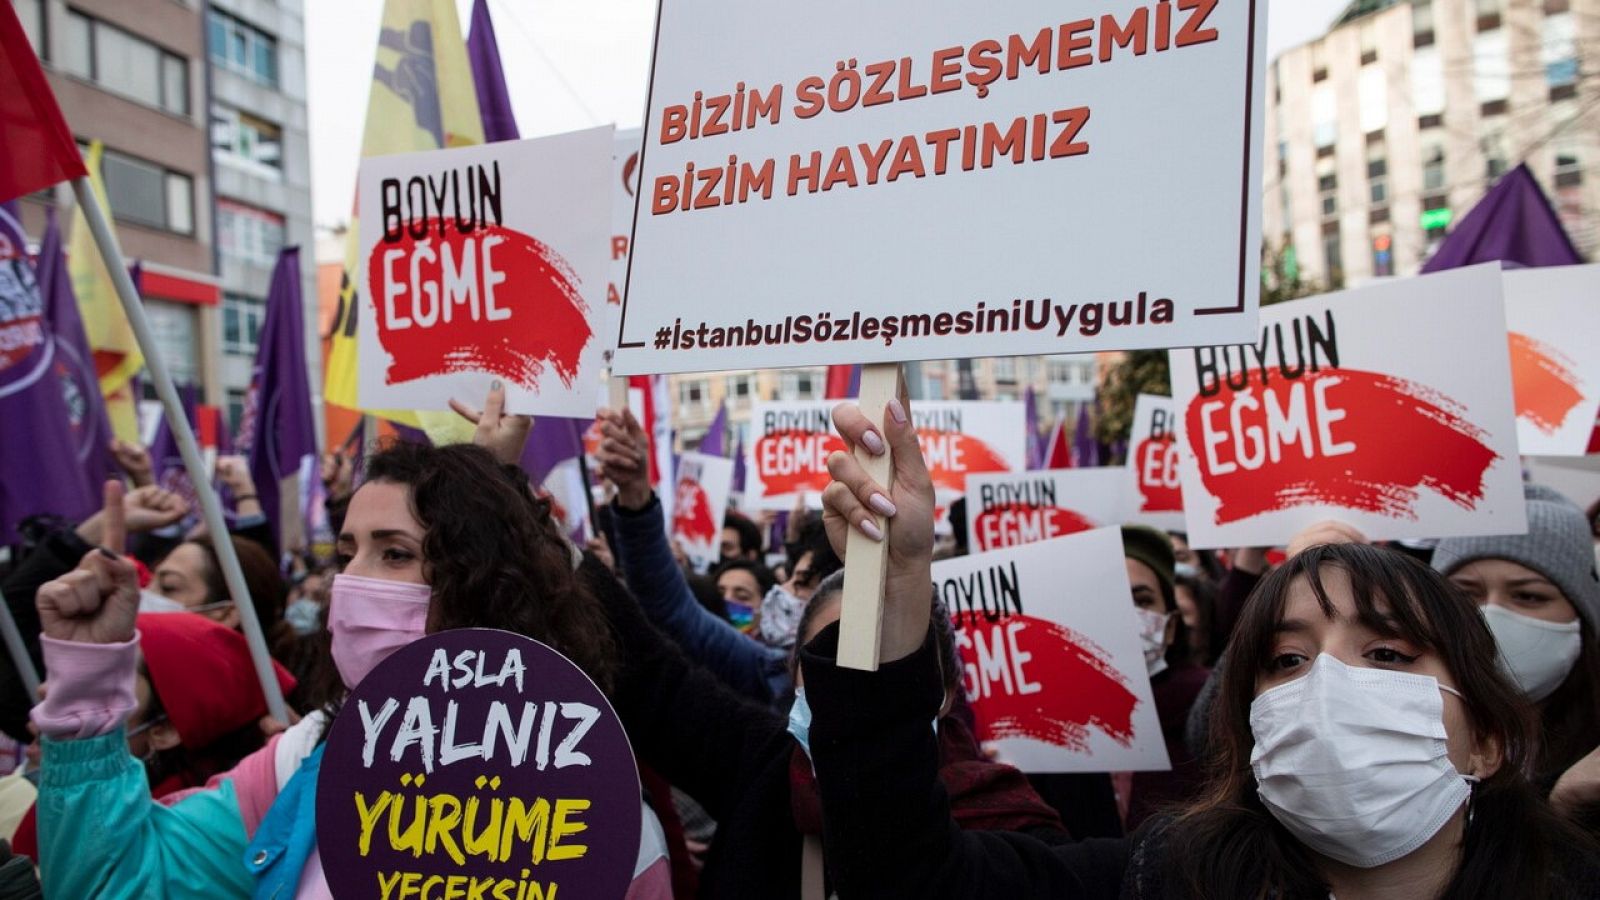 Erdogan confirma la salida de Turquia del convenio de Estambul